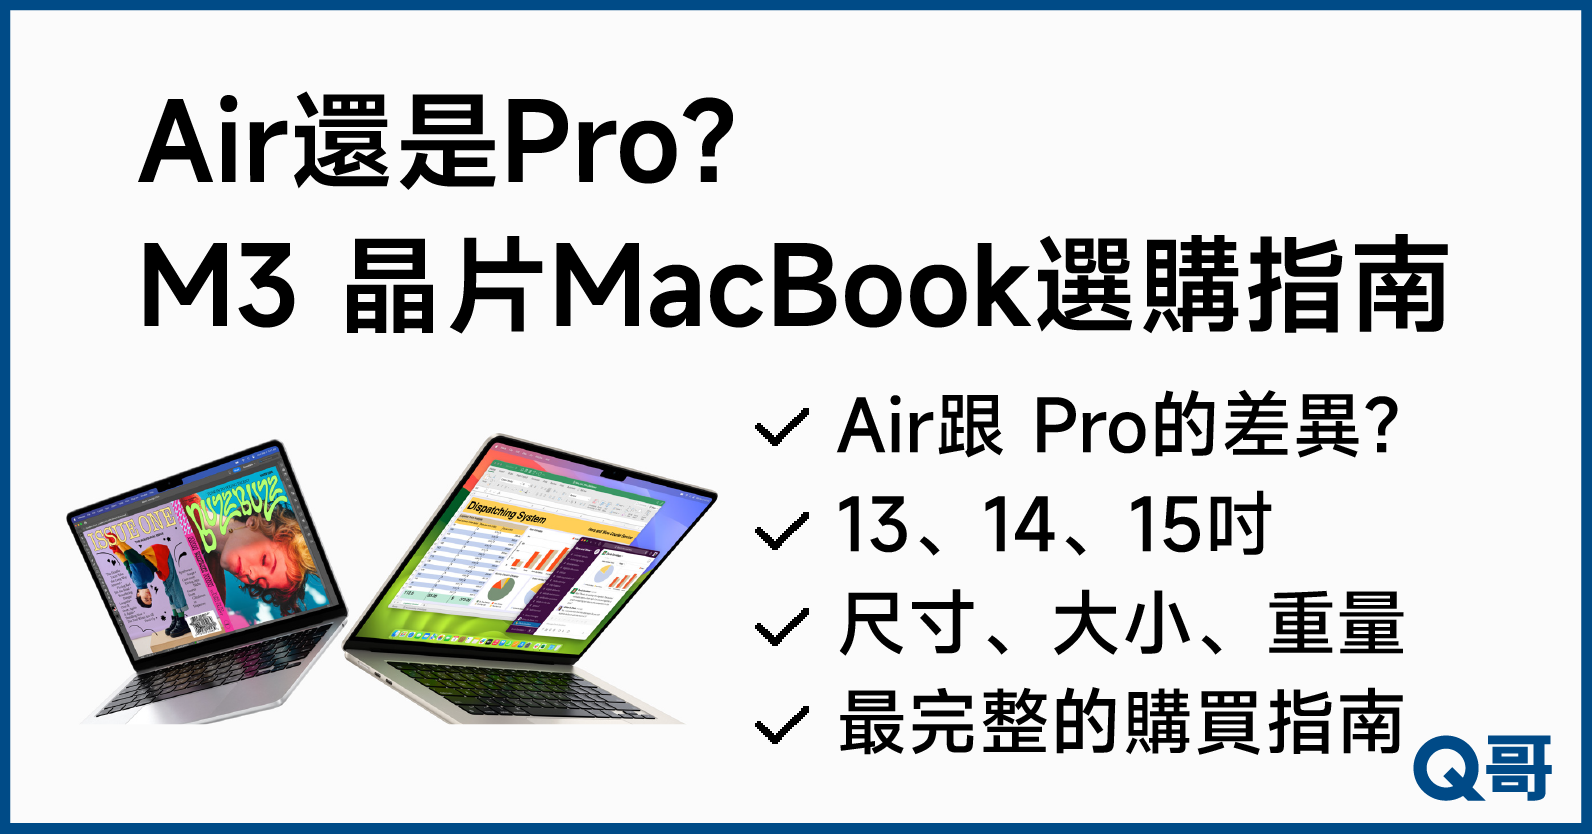 M3MacBook比較,M3晶片,M3版本,M3MACBOOK怎麼選